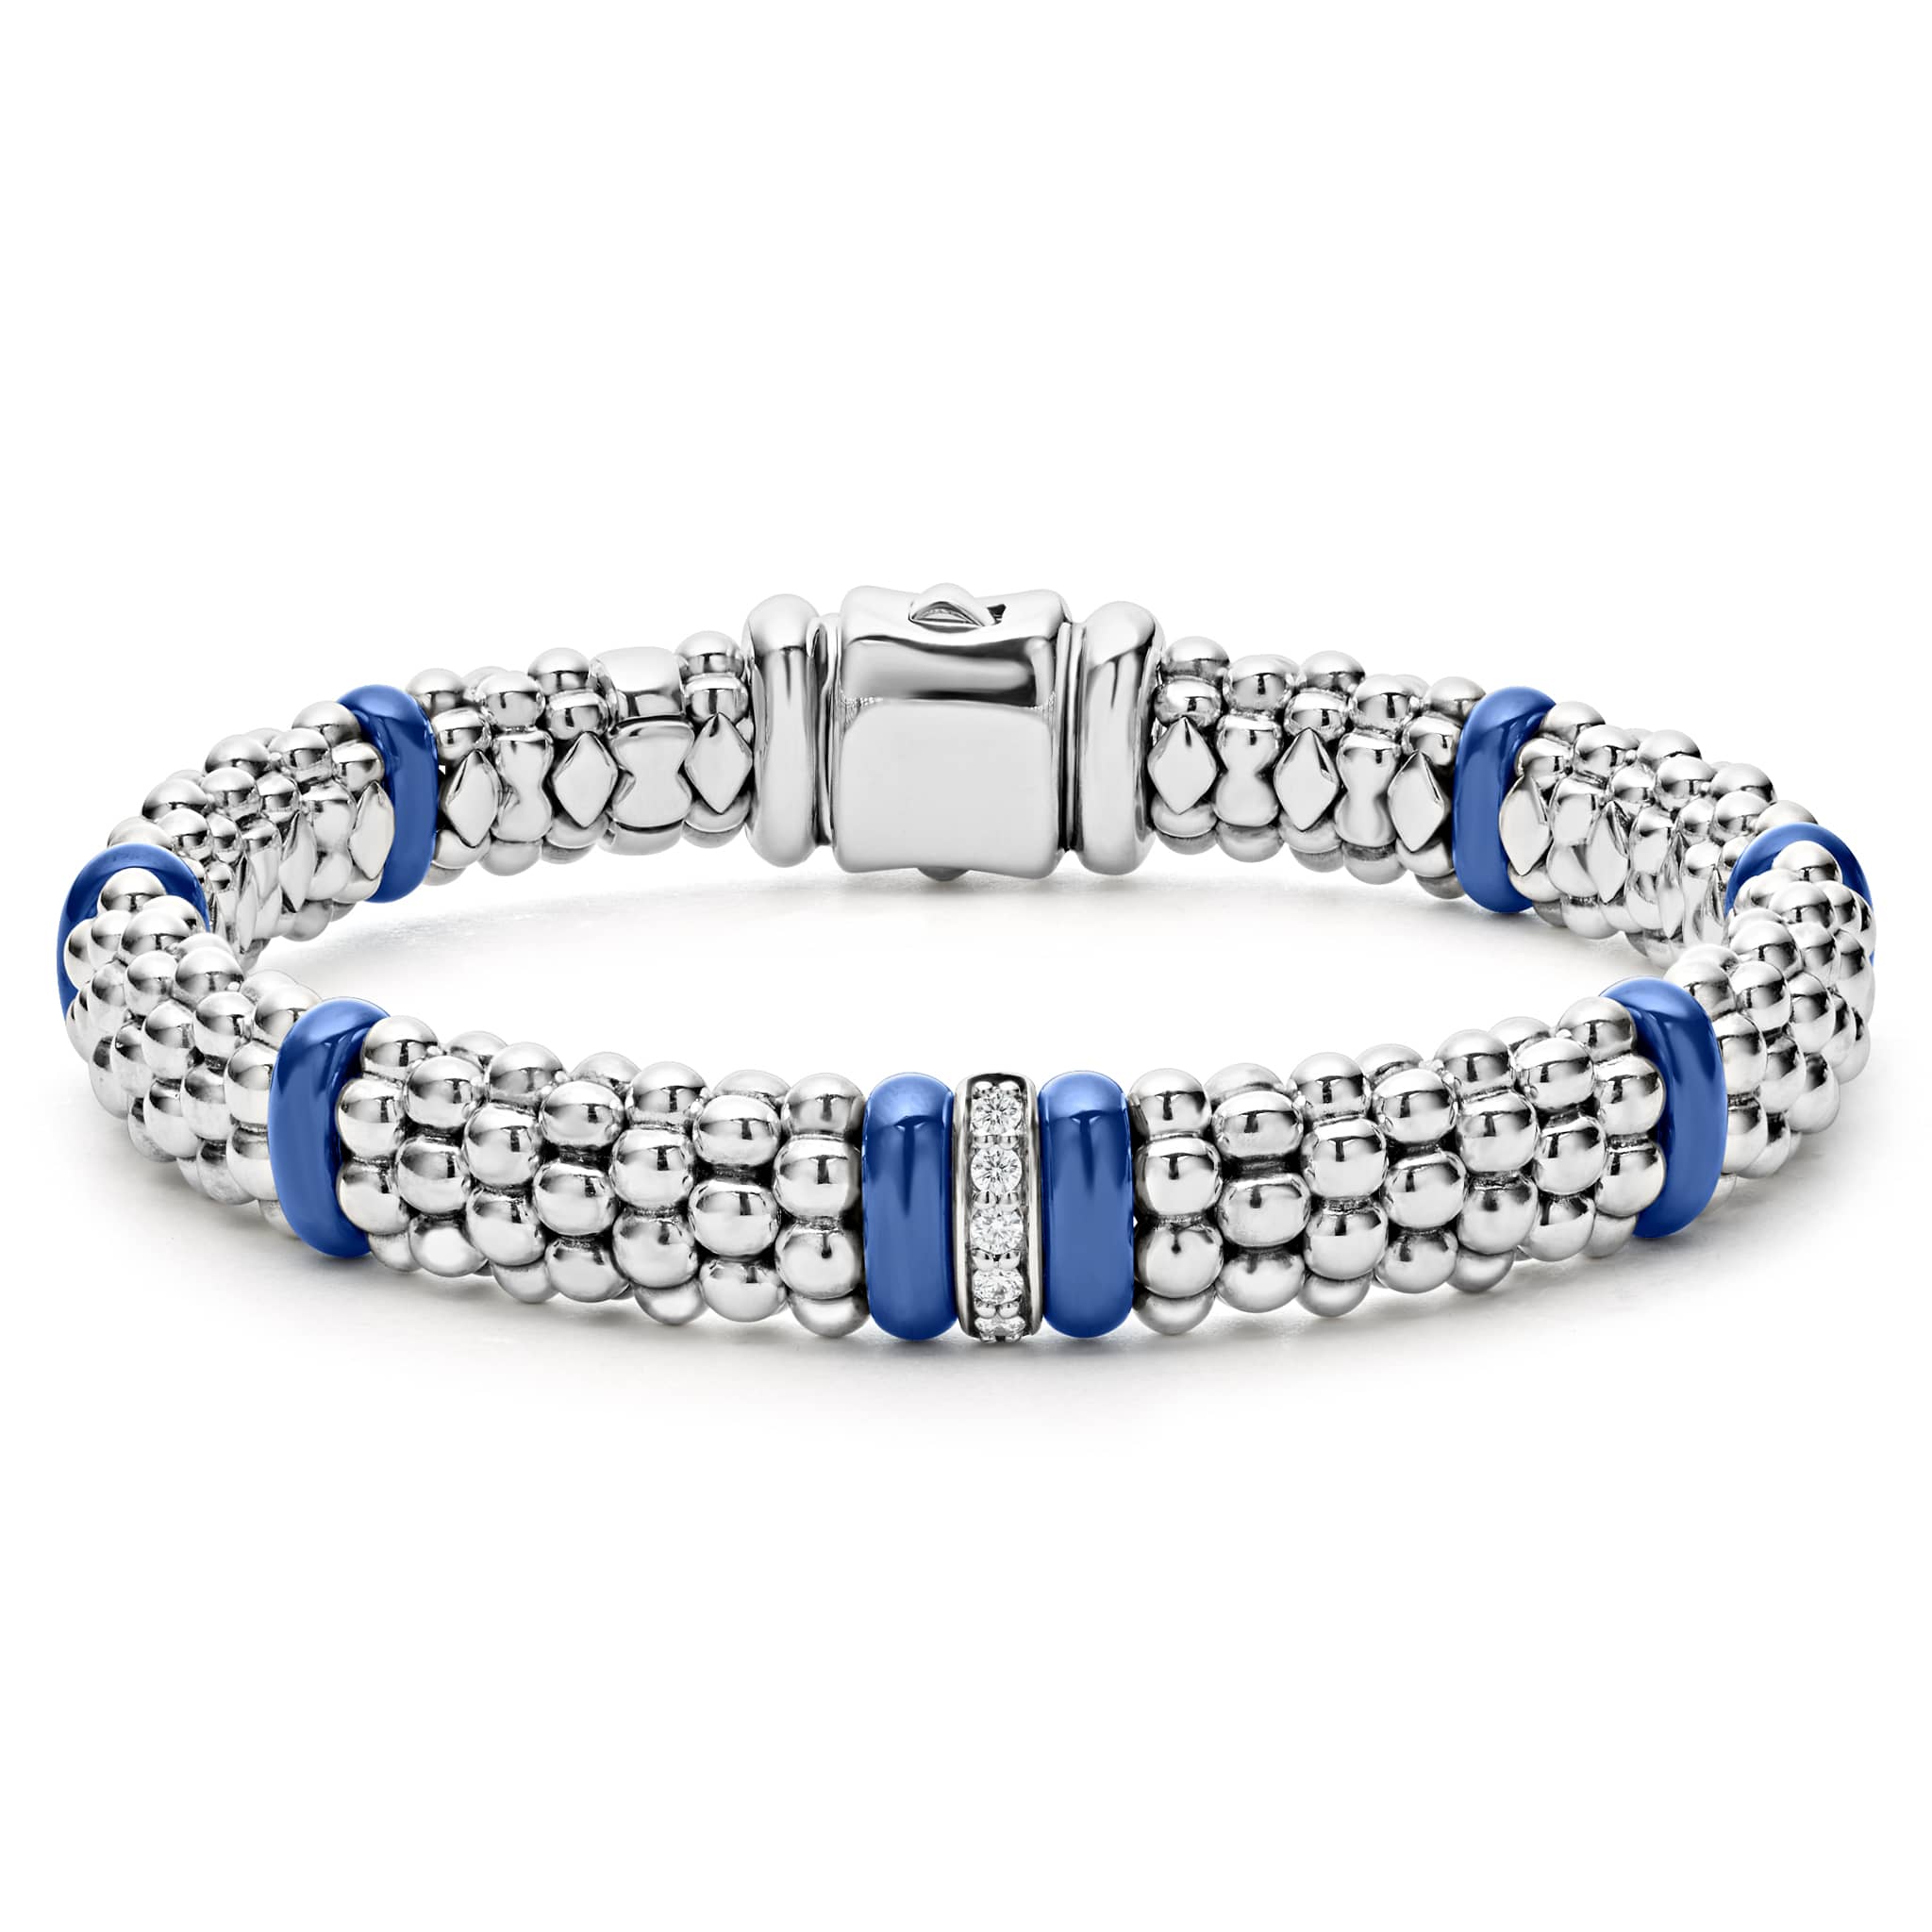 Style: Bangle Description: Bracelet Diamonds - Diamond Bracelets